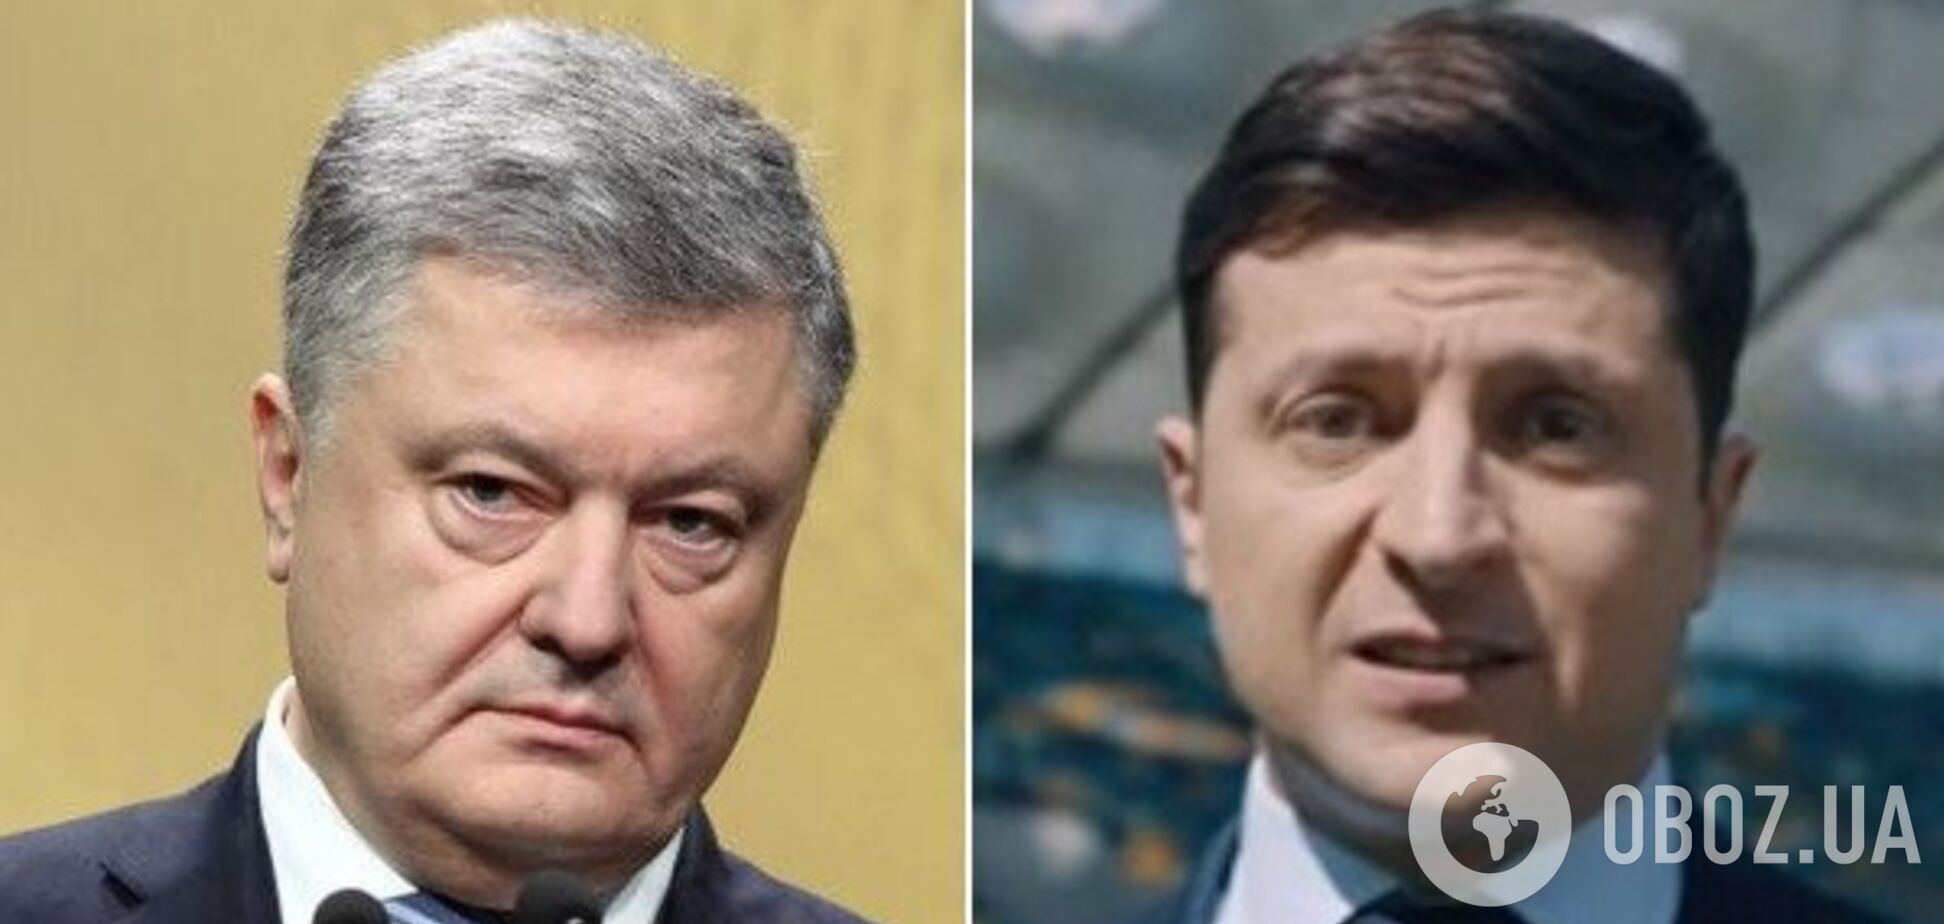 Не стадион: Порошенко и Зеленскому предложили новое место для дебатов